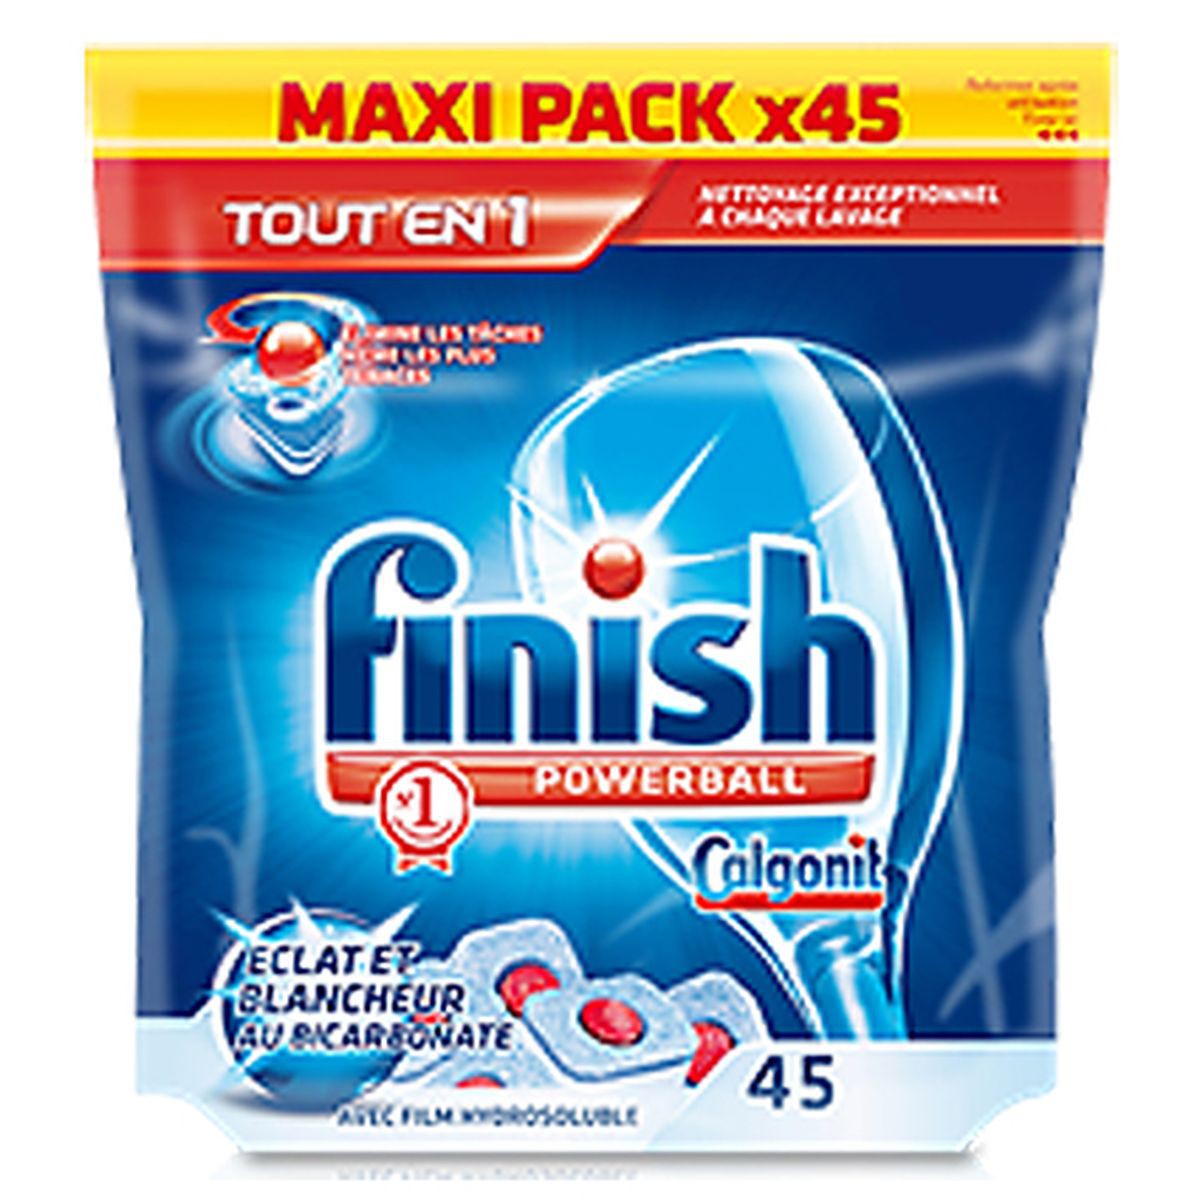 Tablette lave-vaisselle tout en 1 Max powerball FINISH : le paquet